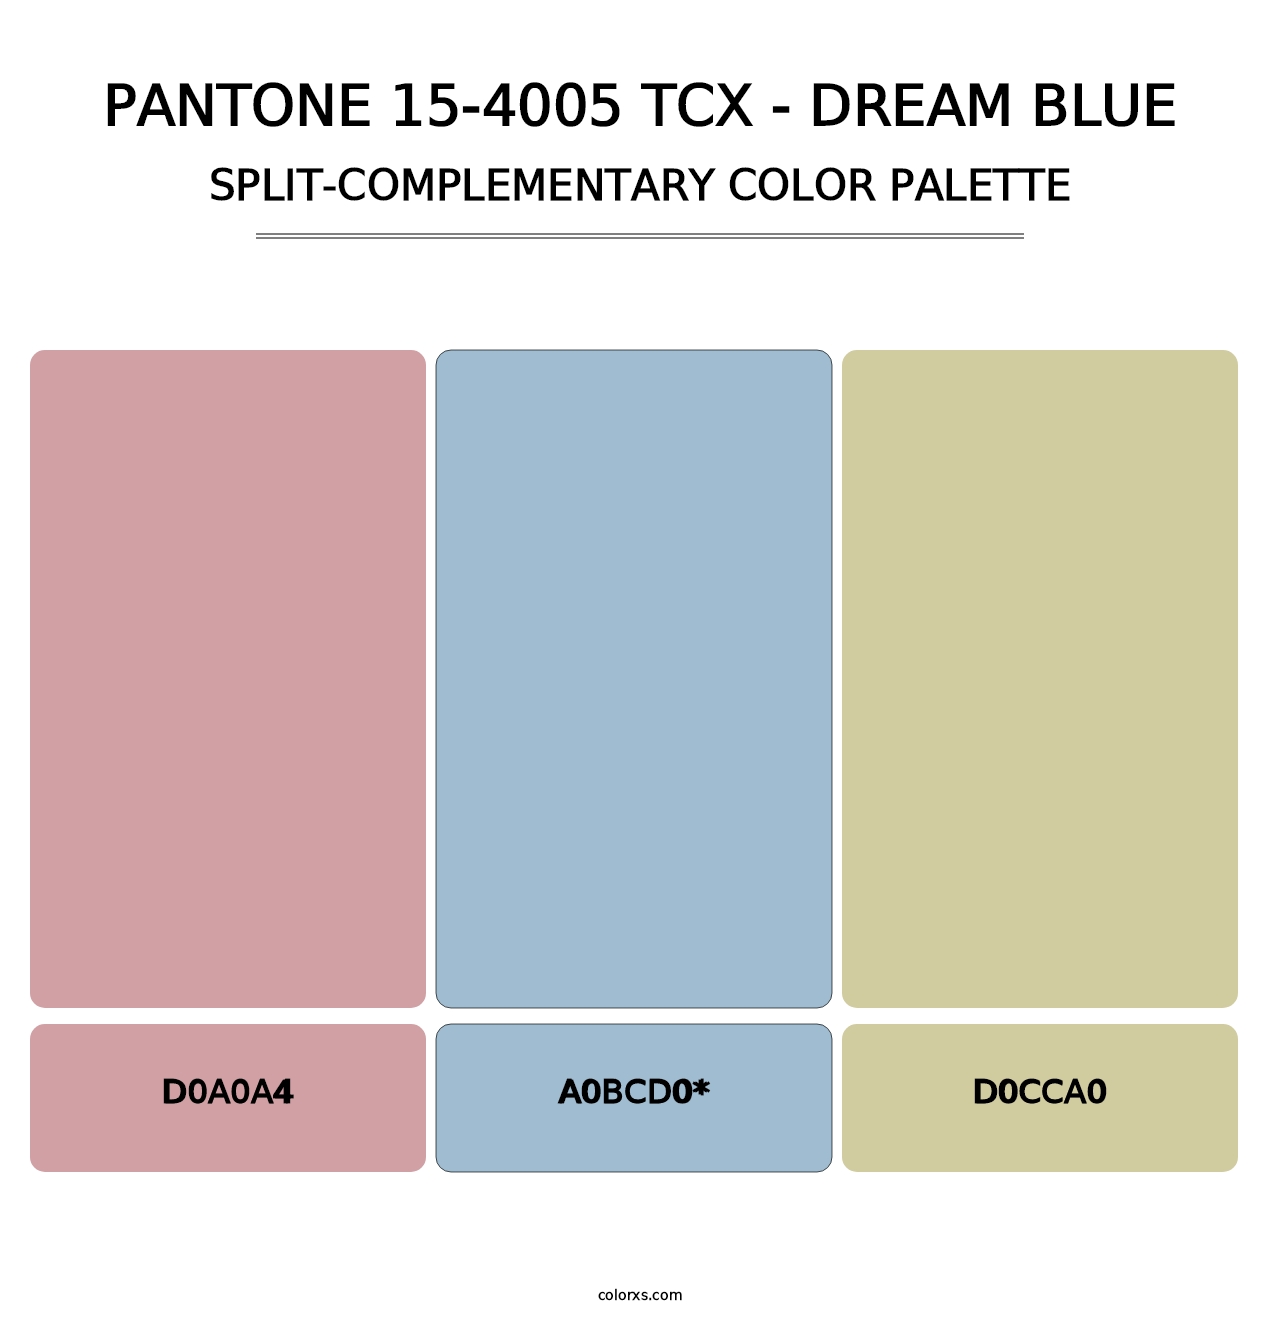 PANTONE 15-4005 TCX - Dream Blue - Split-Complementary Color Palette